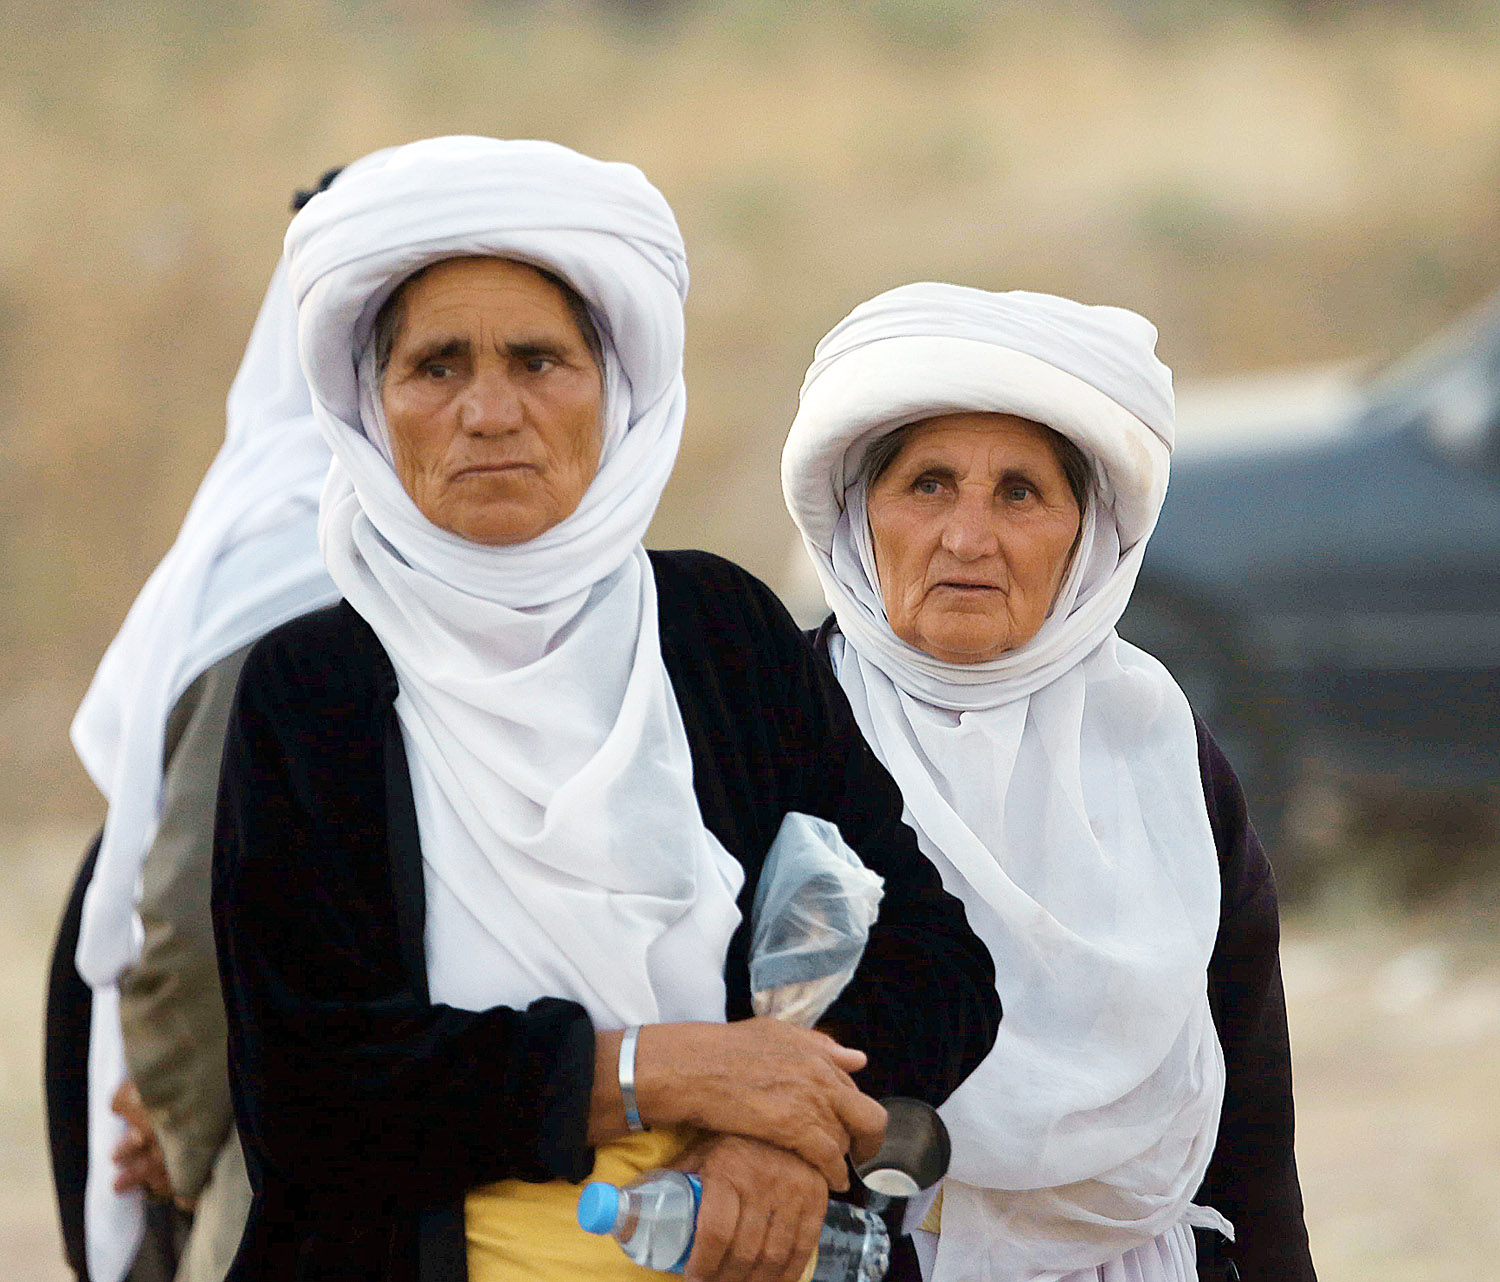 Menekült asszonyok Irakban– a nők nem harcolnak